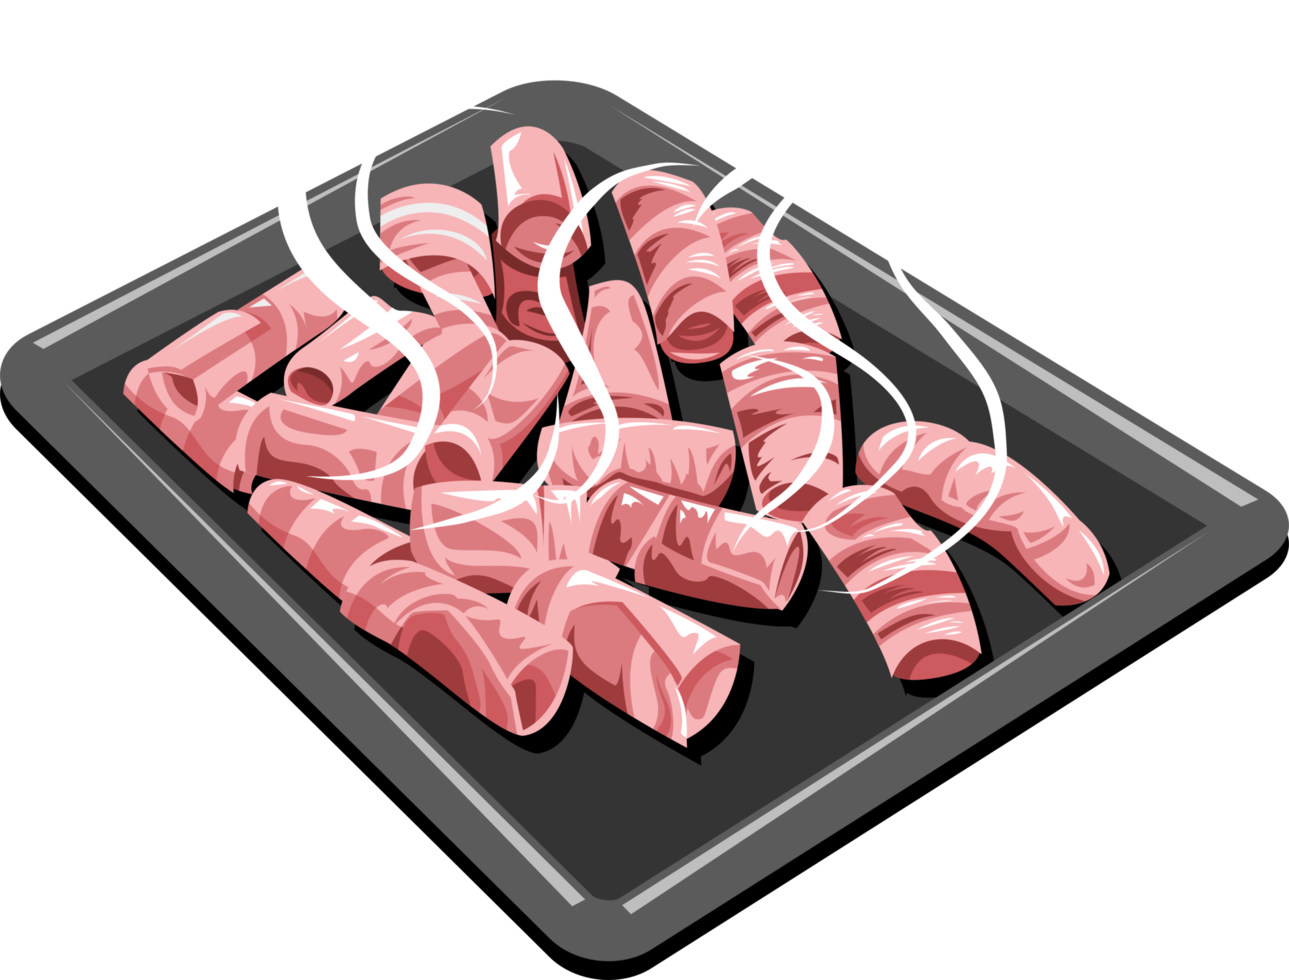 grelhado carne de porco barriga png gráfico clipart Projeto